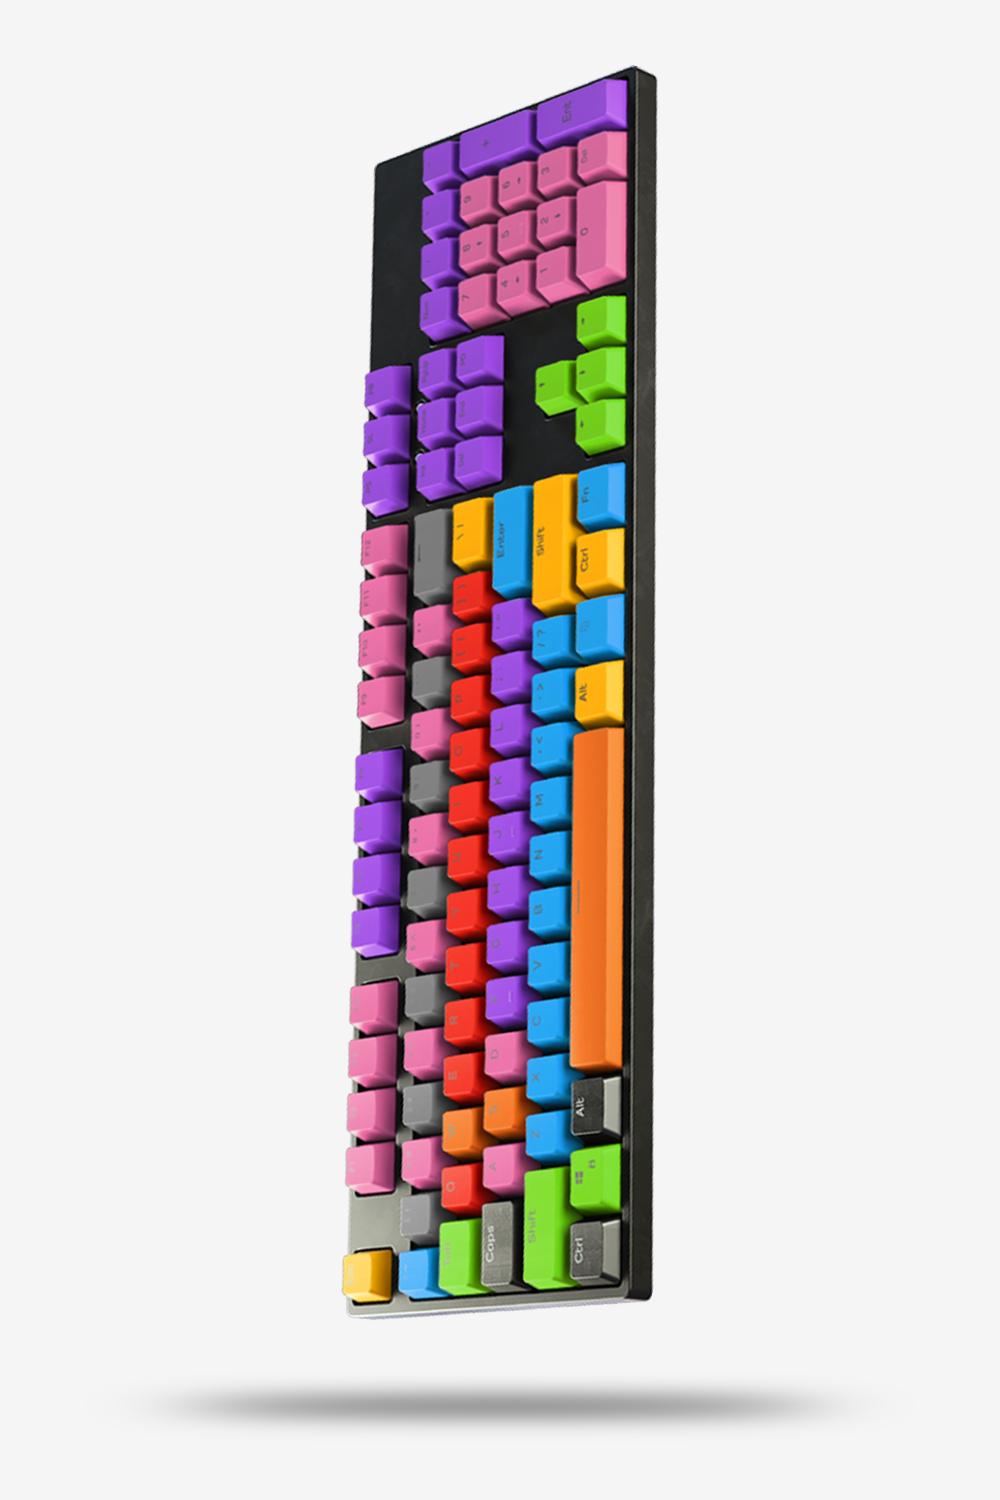 Spectrum Keycaps - Gaming Keyboards